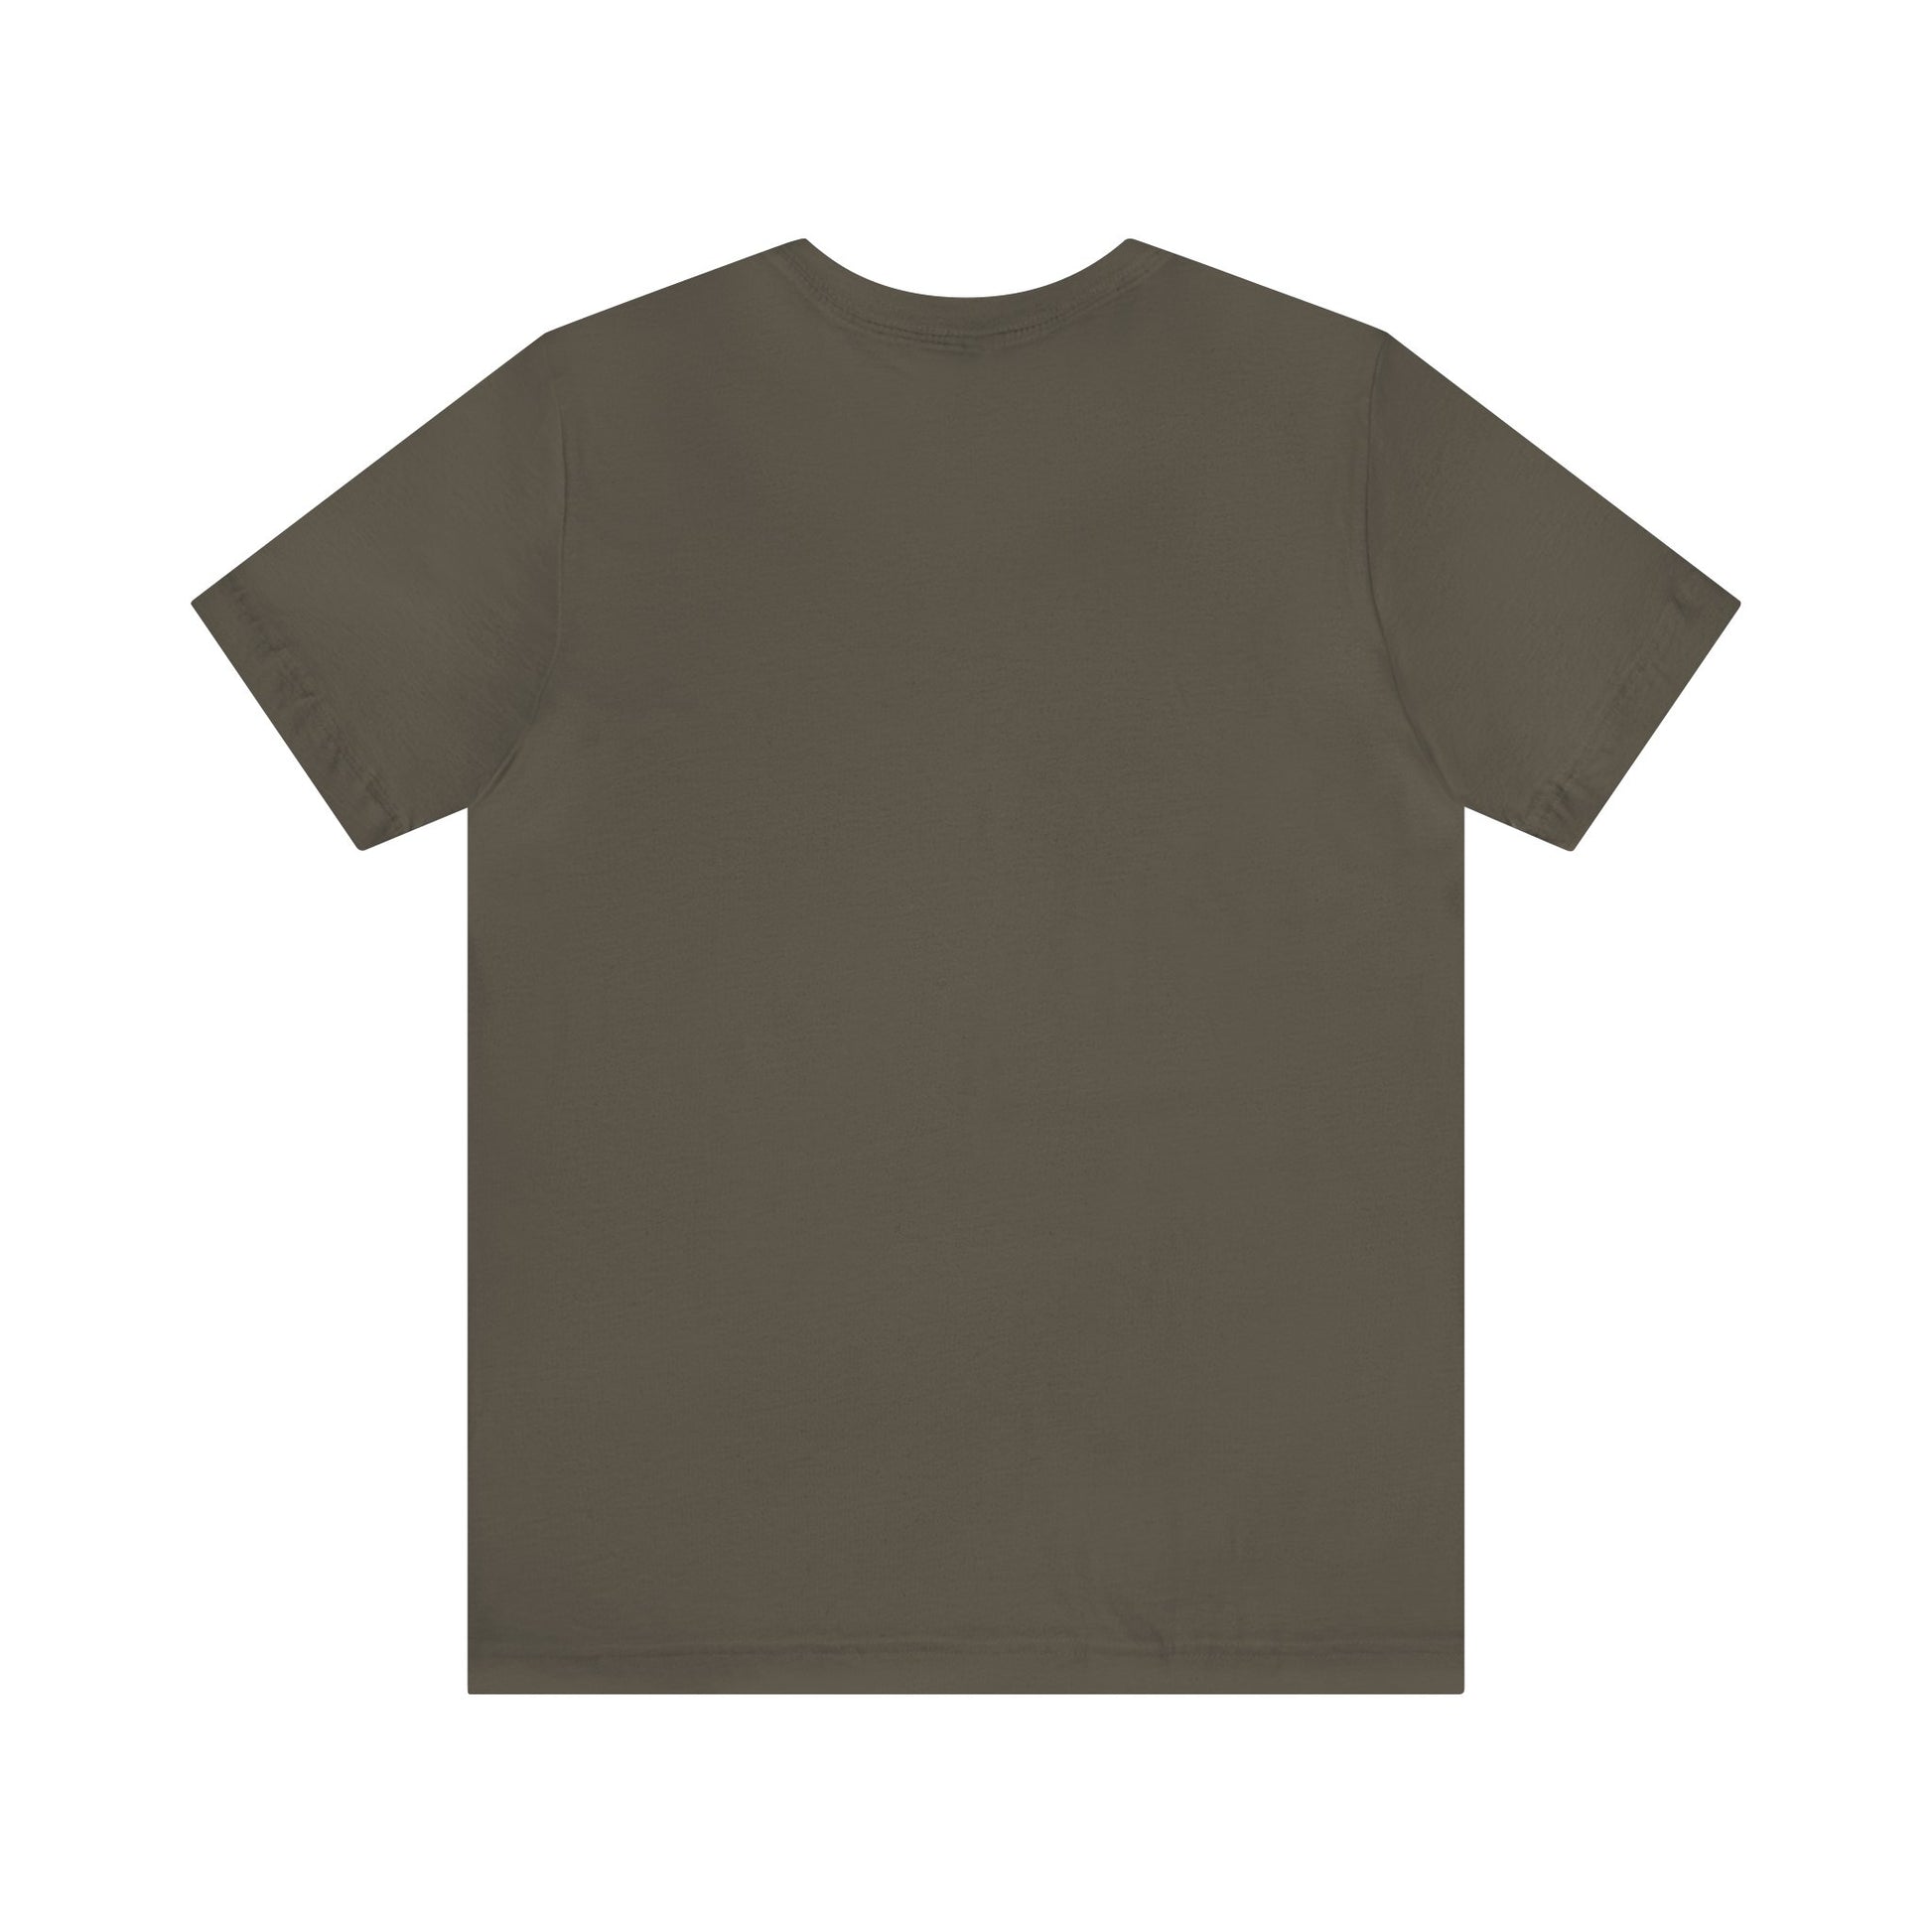 Send Nodes Short Sleeve Men's Women's Unisex T-Shirt